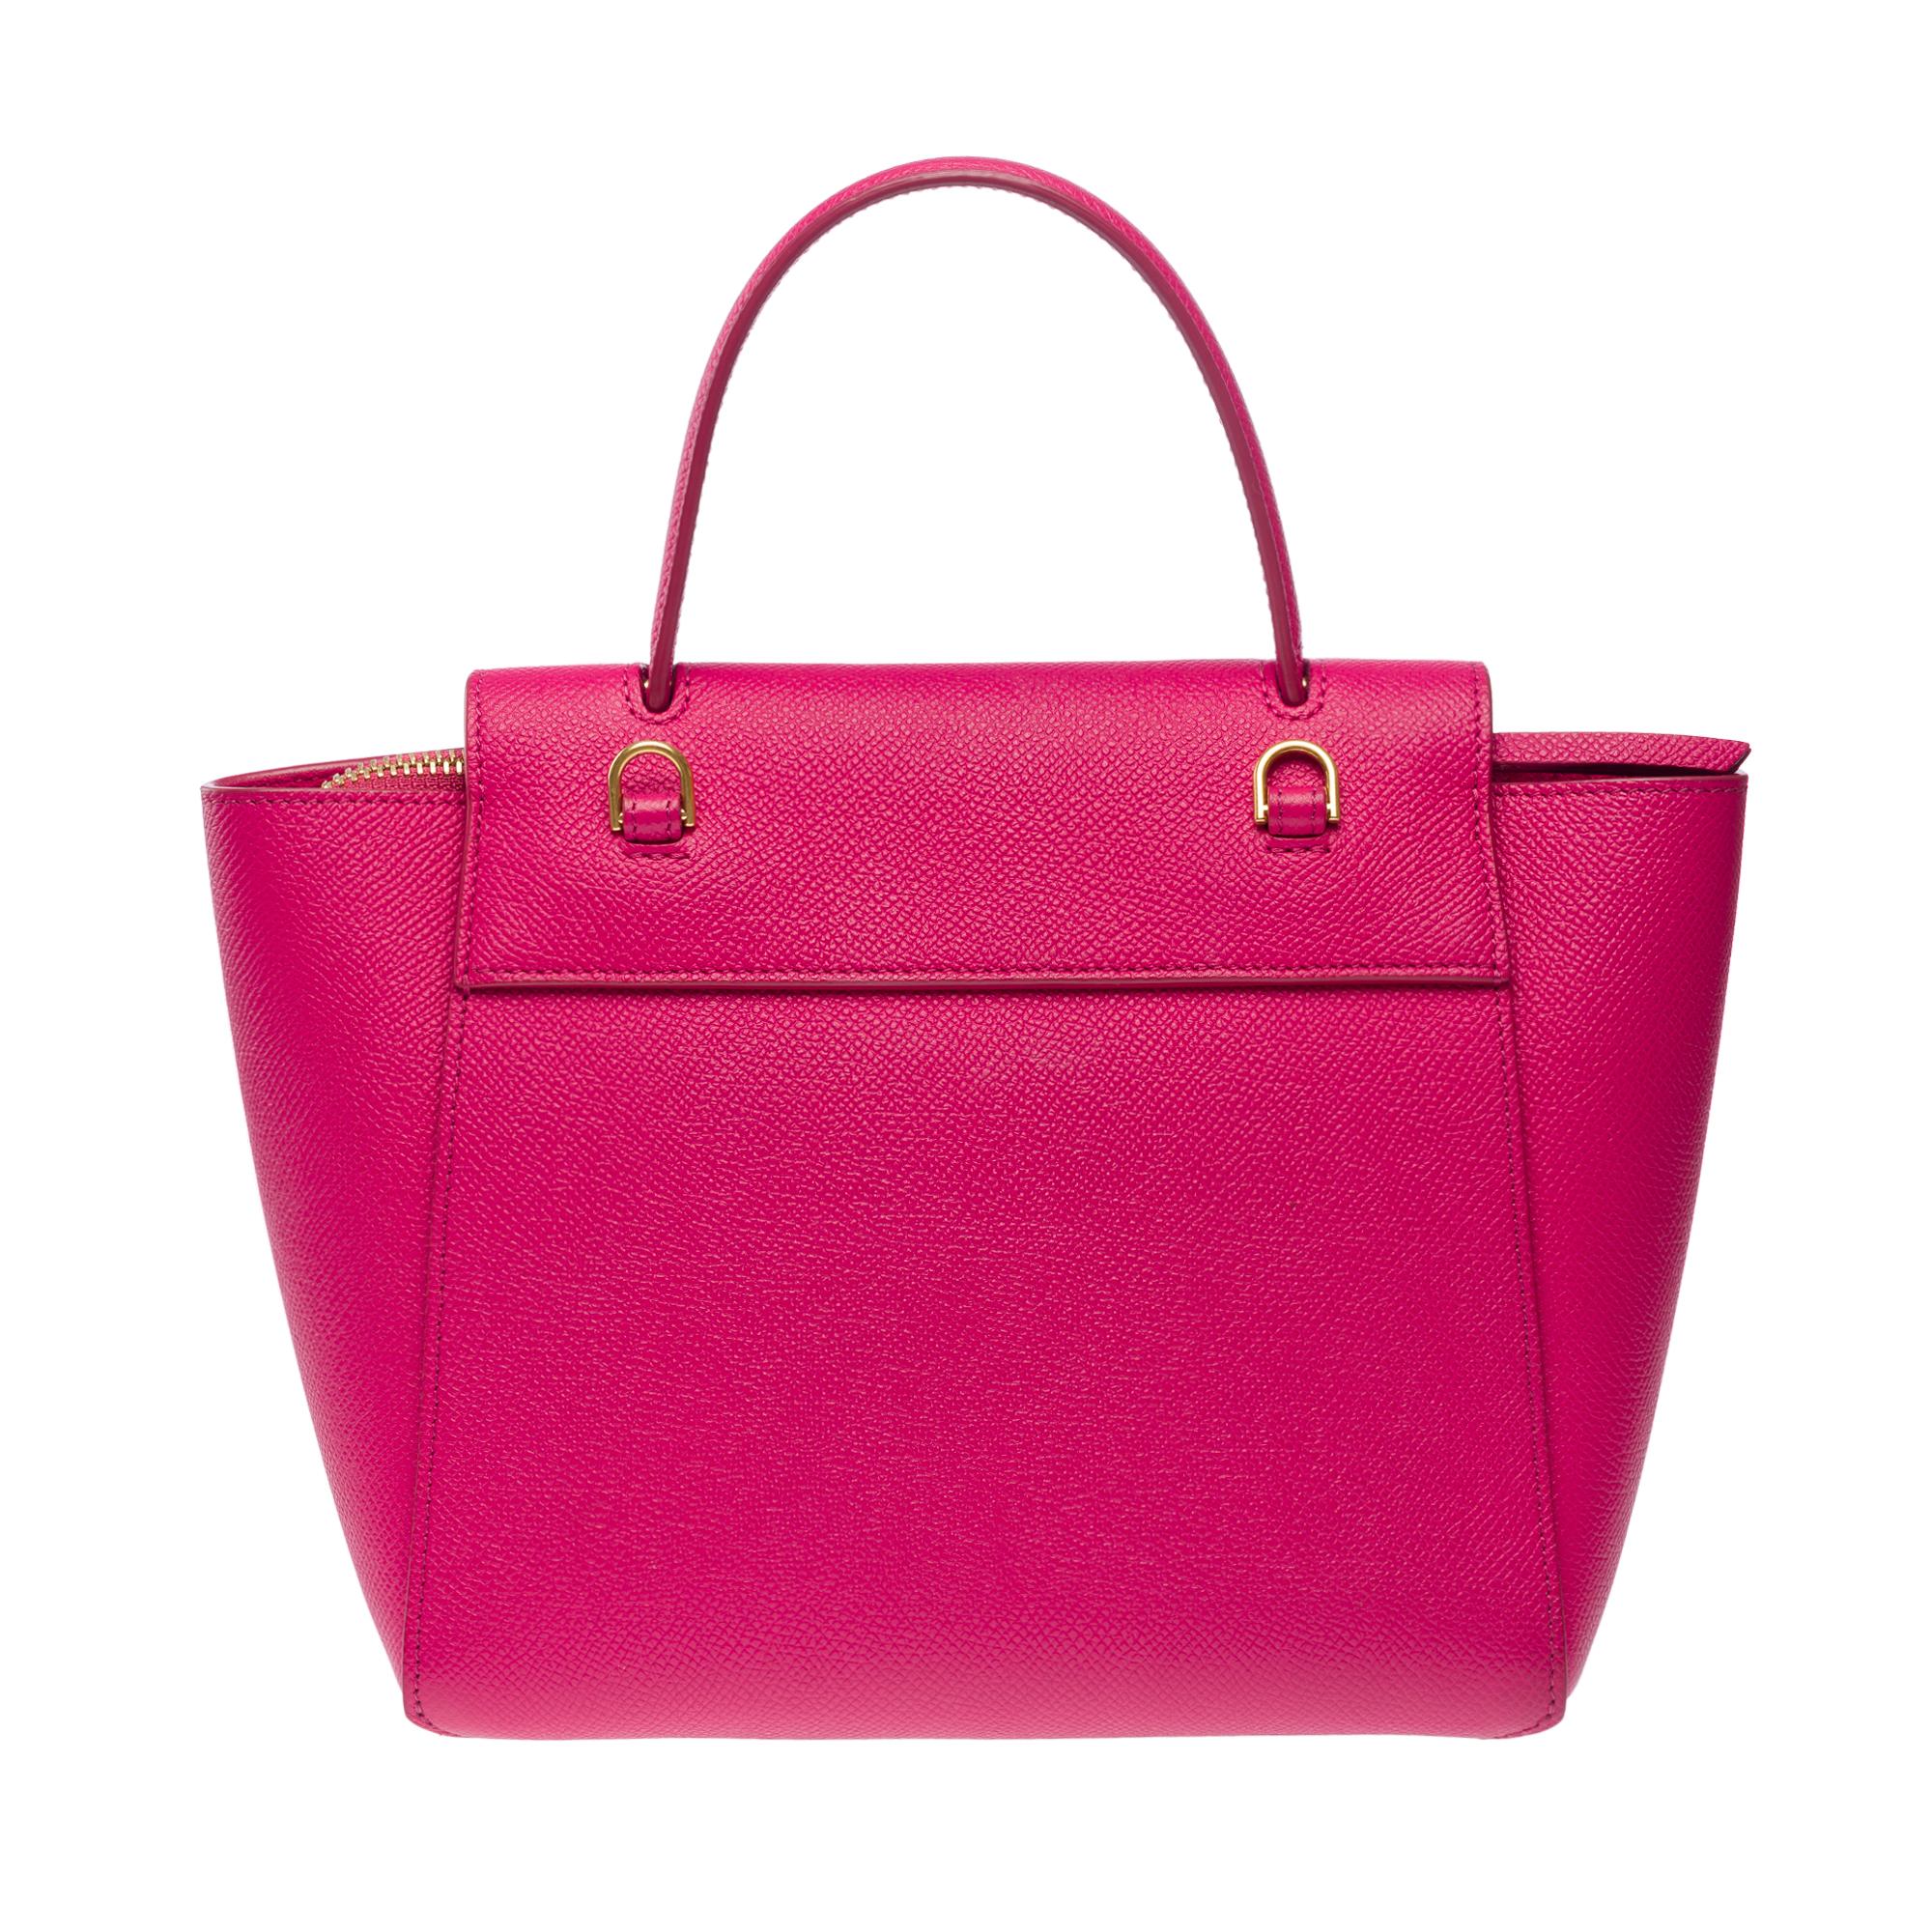 Celine Belt Nano handbag strap in pink calf leather, GHW For Sale 1